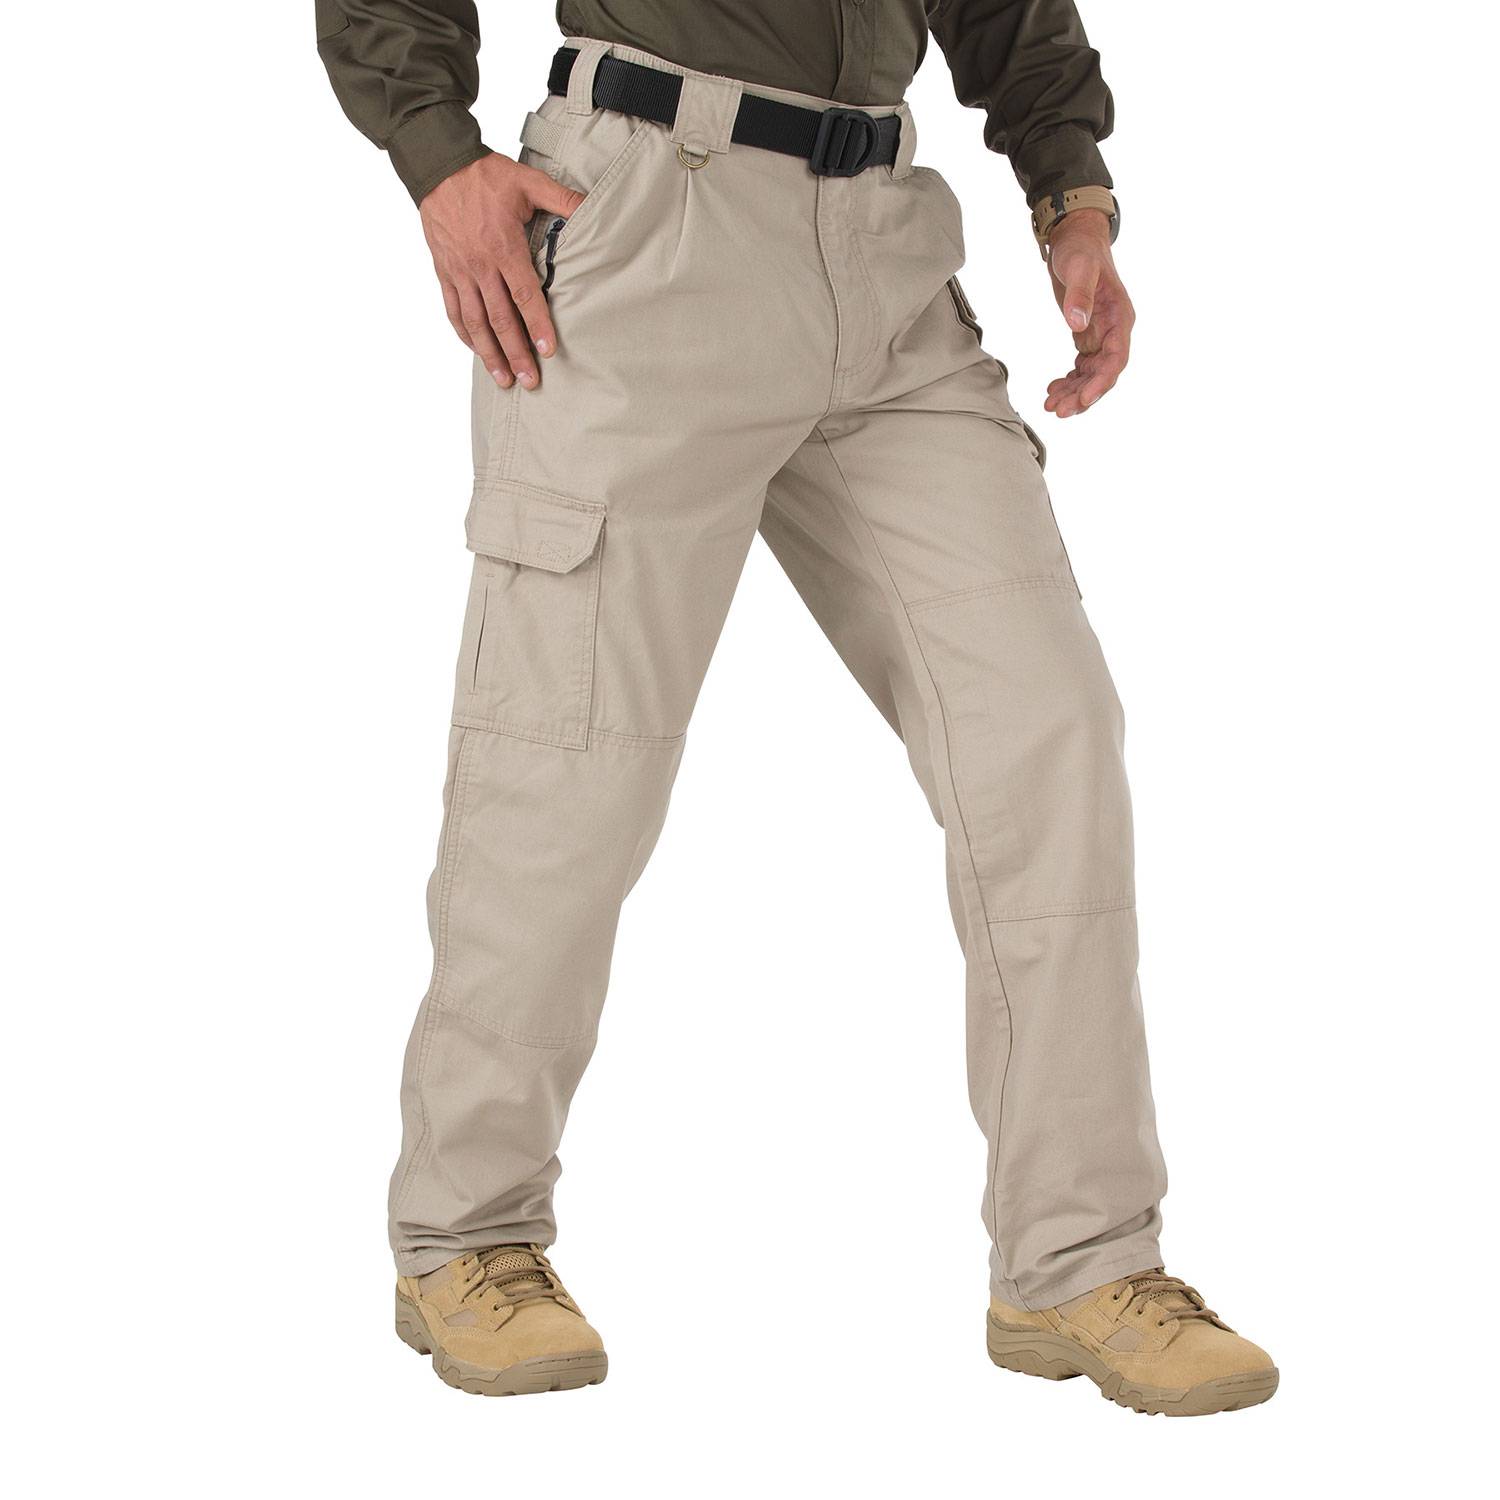 501 tactical pants